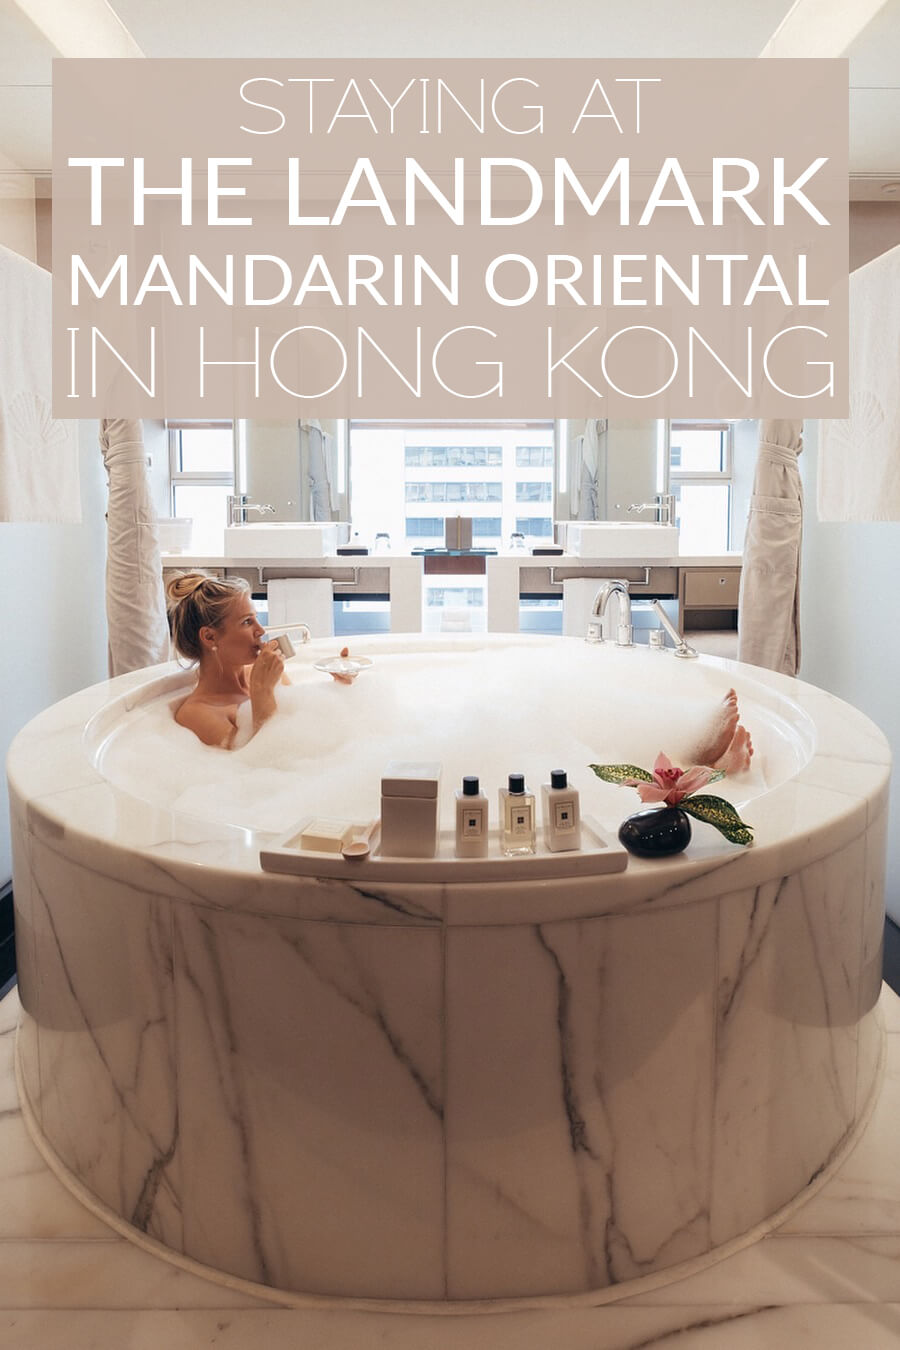 Staying at the Landmark Mandarin Oriental in Hong Kong